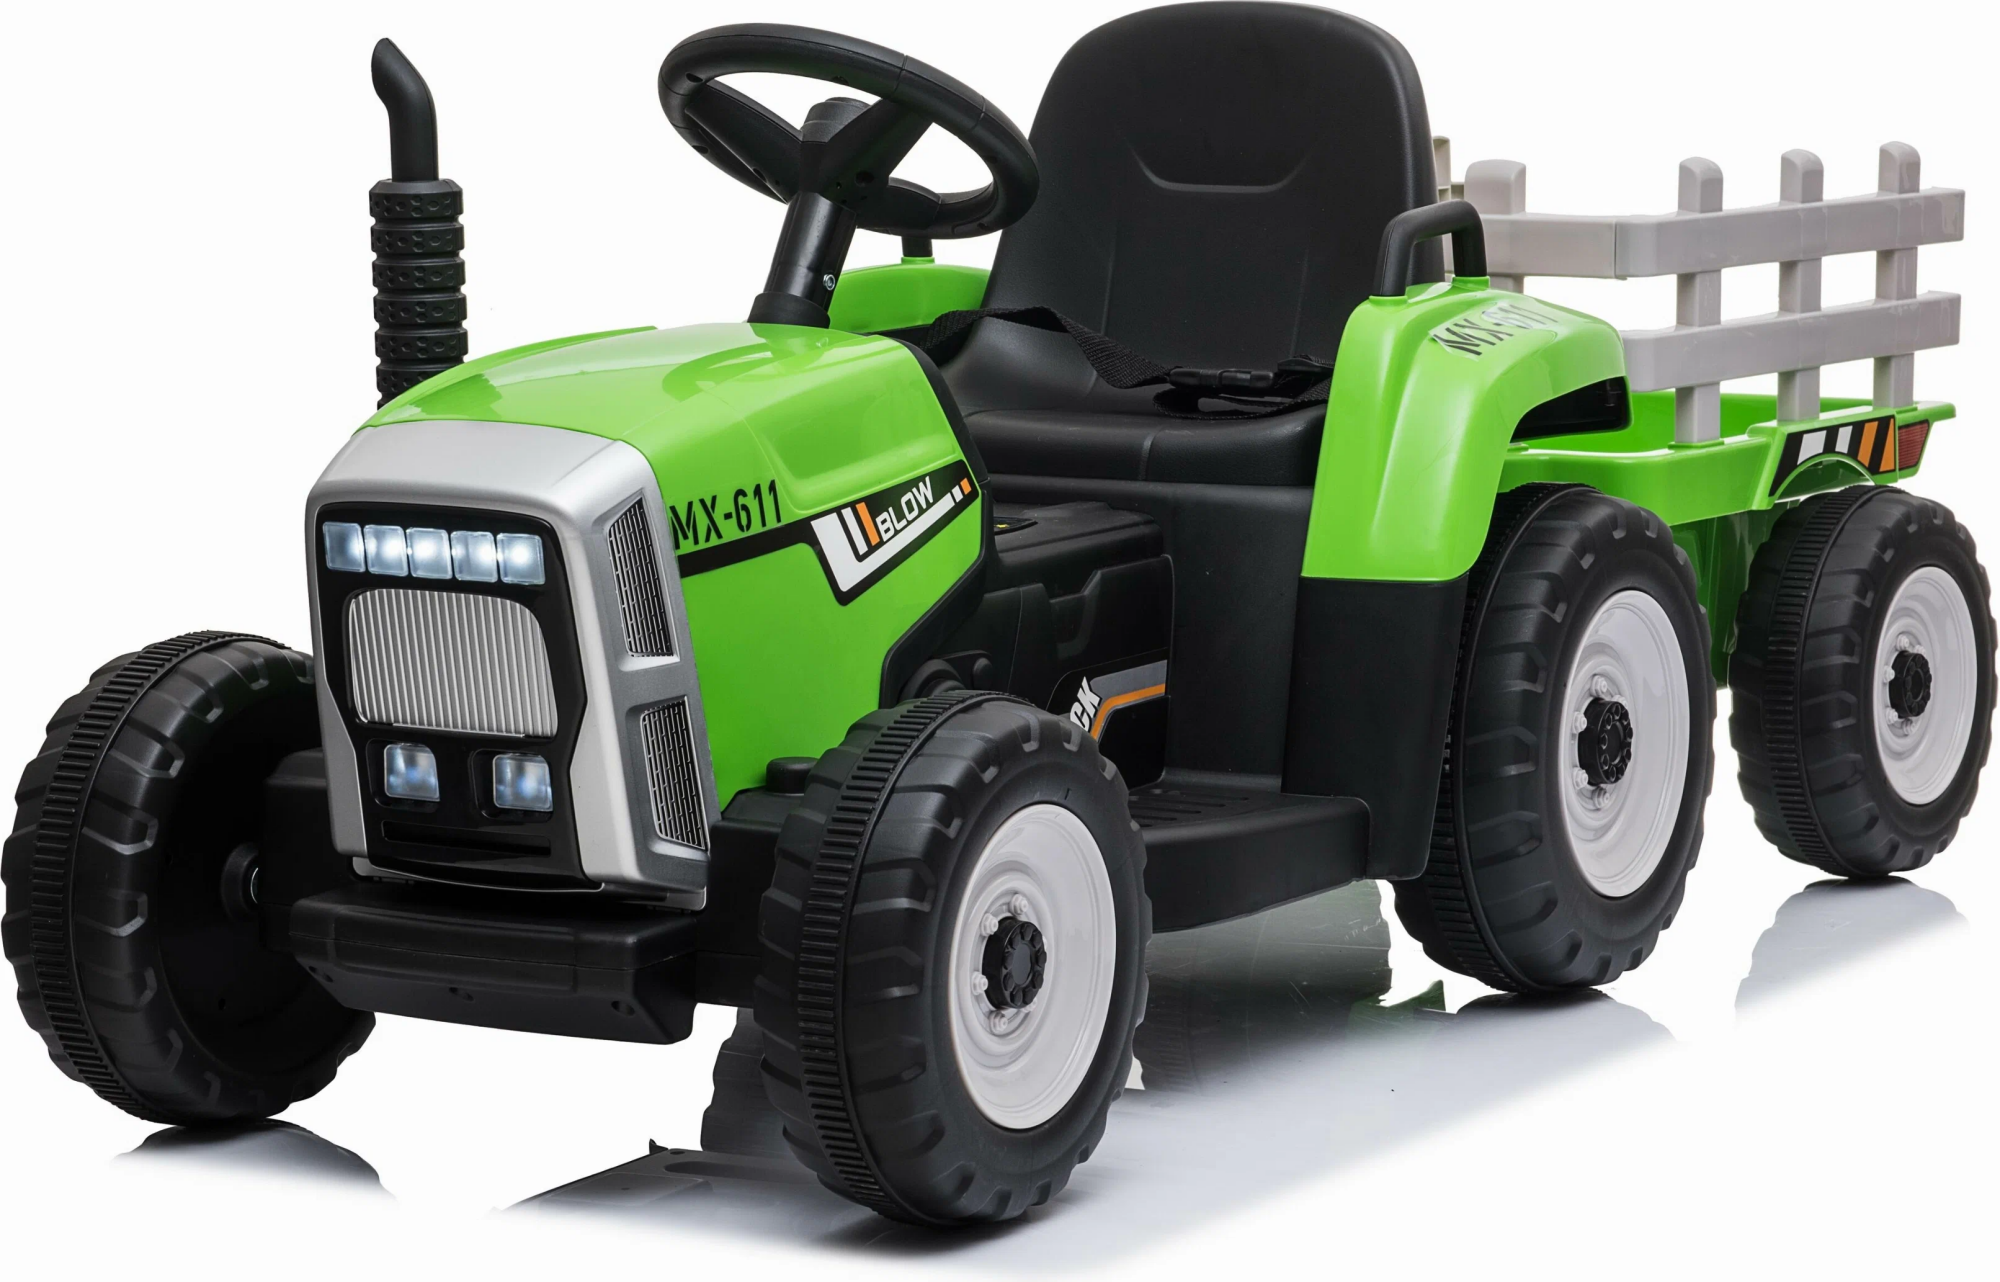  Mamido Elektrický traktor s vlečkou Blow zelený